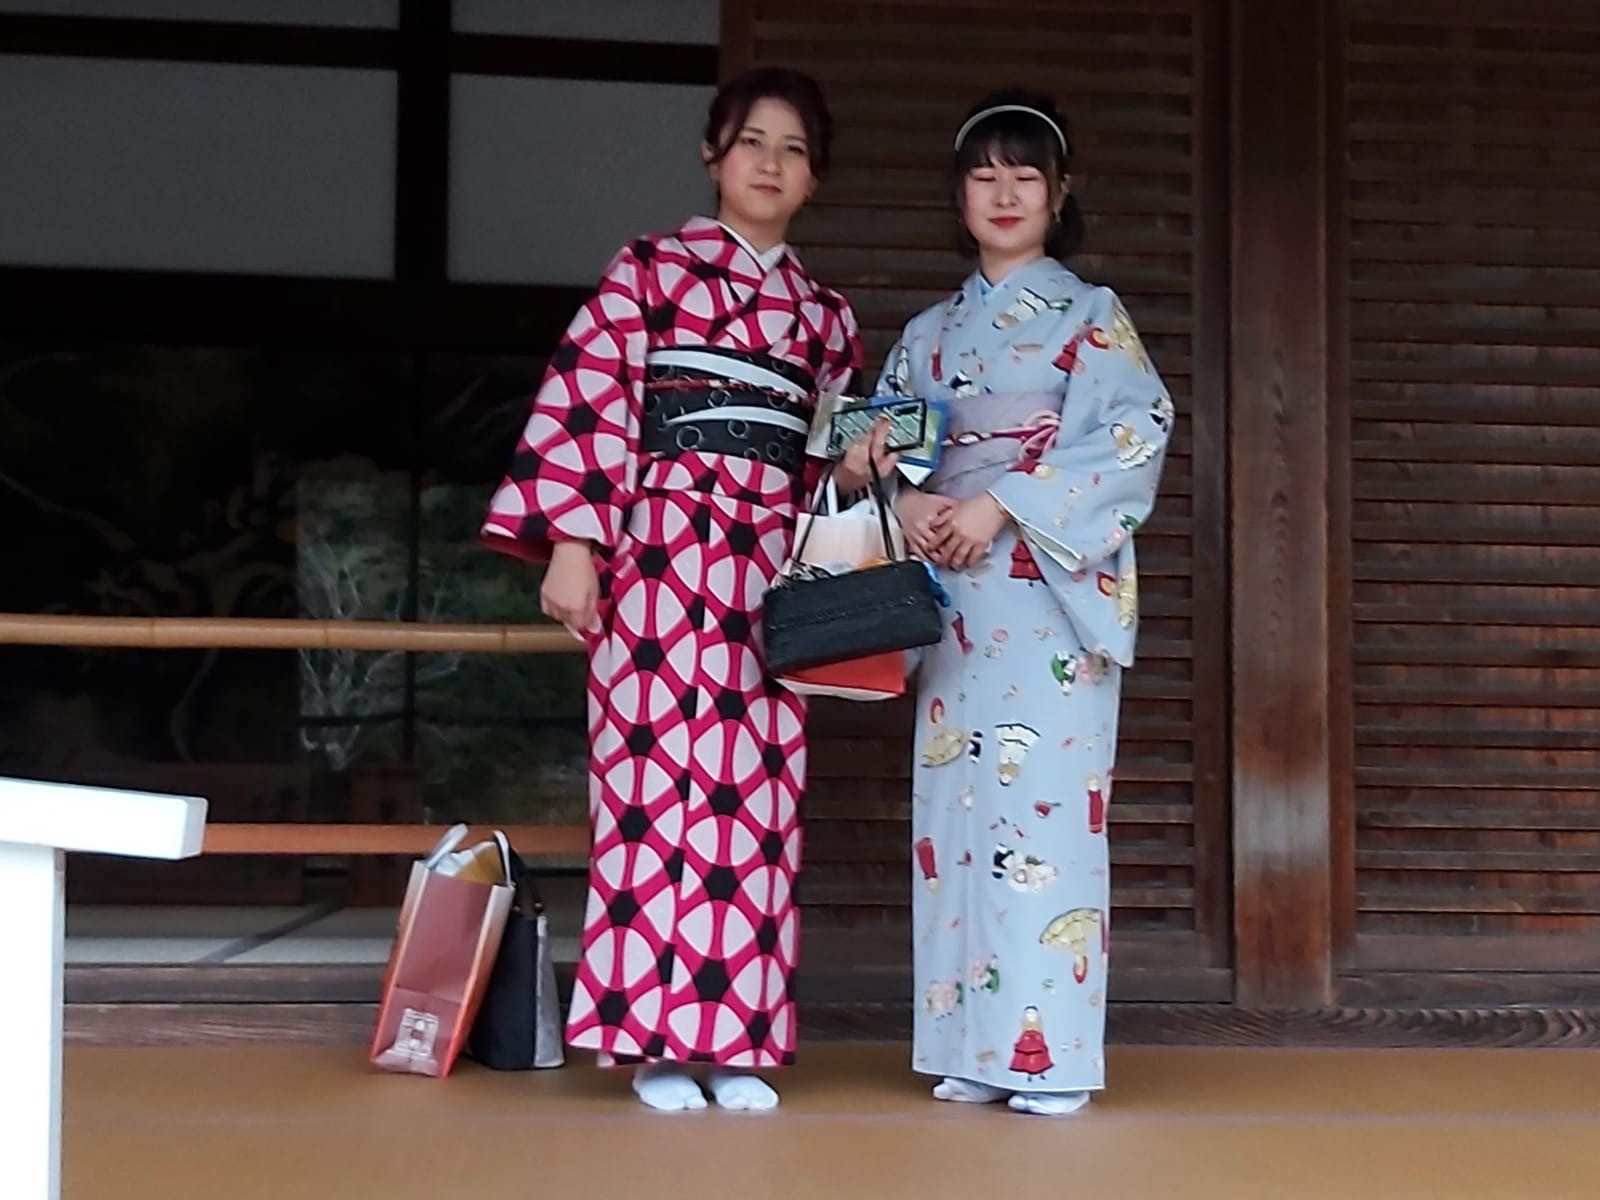 Les filles en kimono à
Kyoto